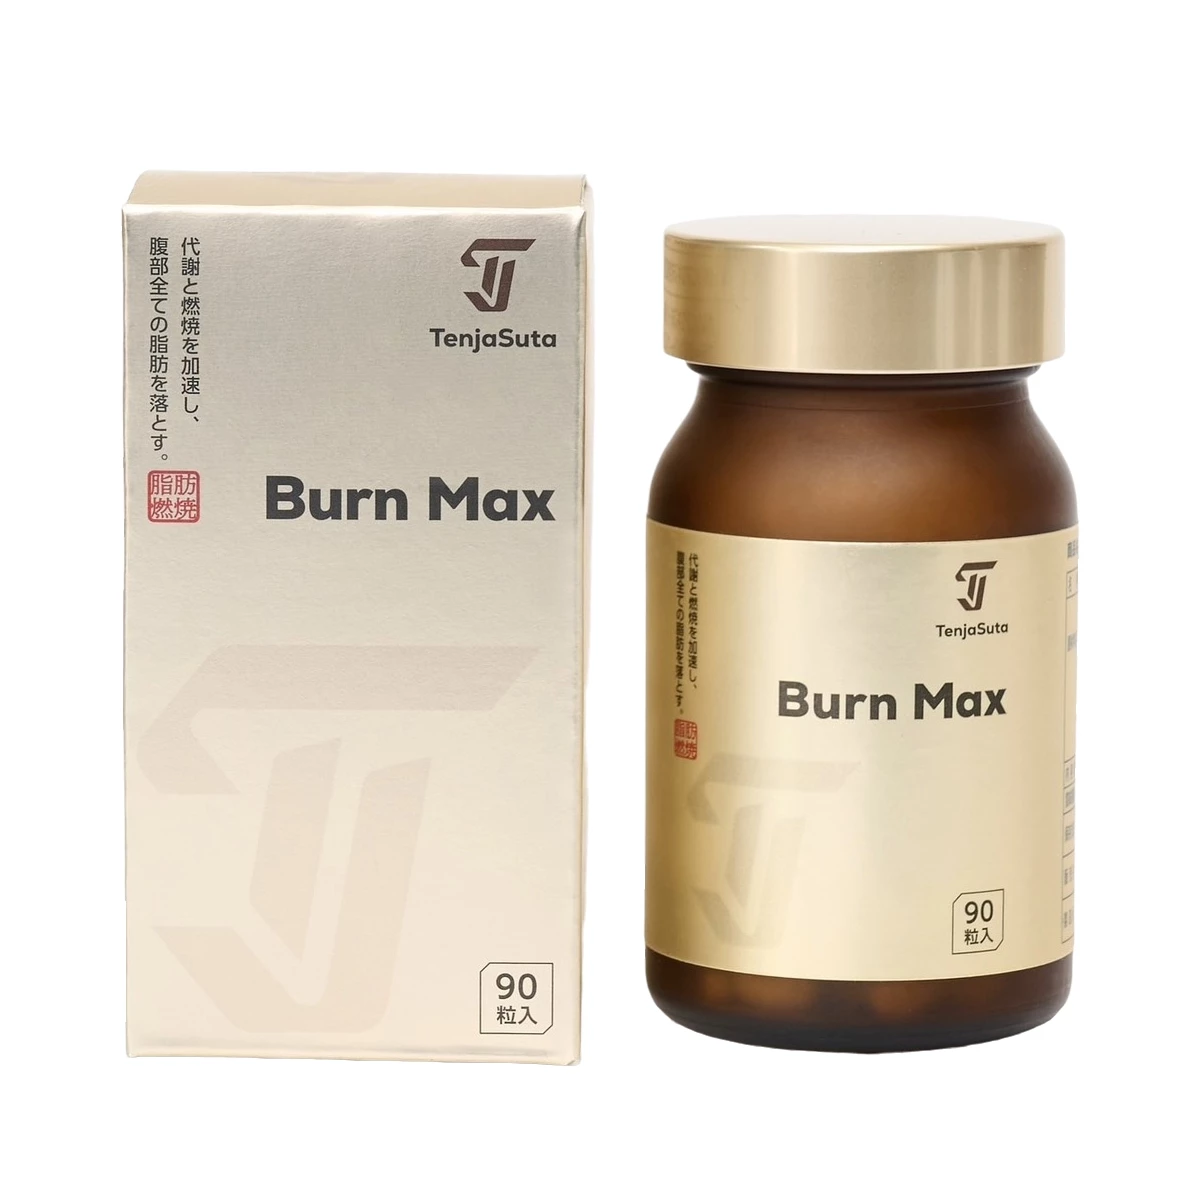 Burn Max TenjaSuta - Hỗ trợ giảm cân, hạn chế tích tụ mỡ thừa